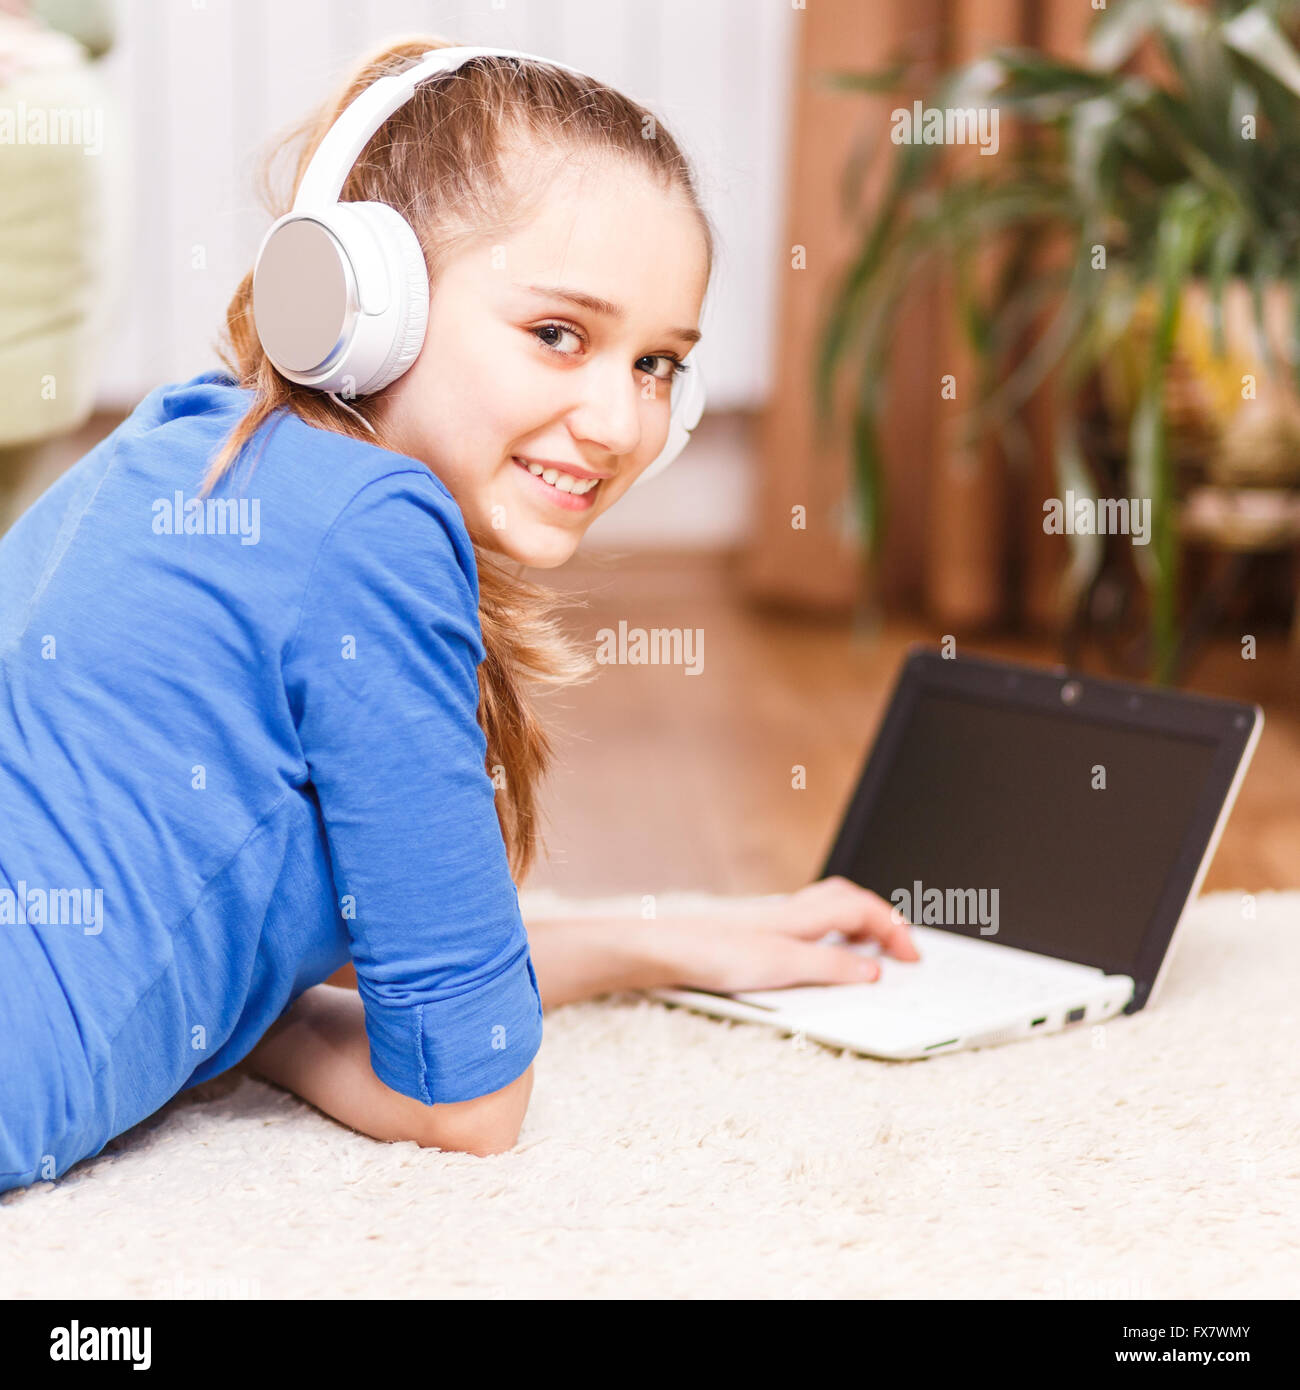 Teenage girl smiling avec casque blanc à l'aide de l'ordinateur portable sur le sol. Smiling adolescent avec ordinateur portable à la maison. L'éducation en ligne ba Banque D'Images